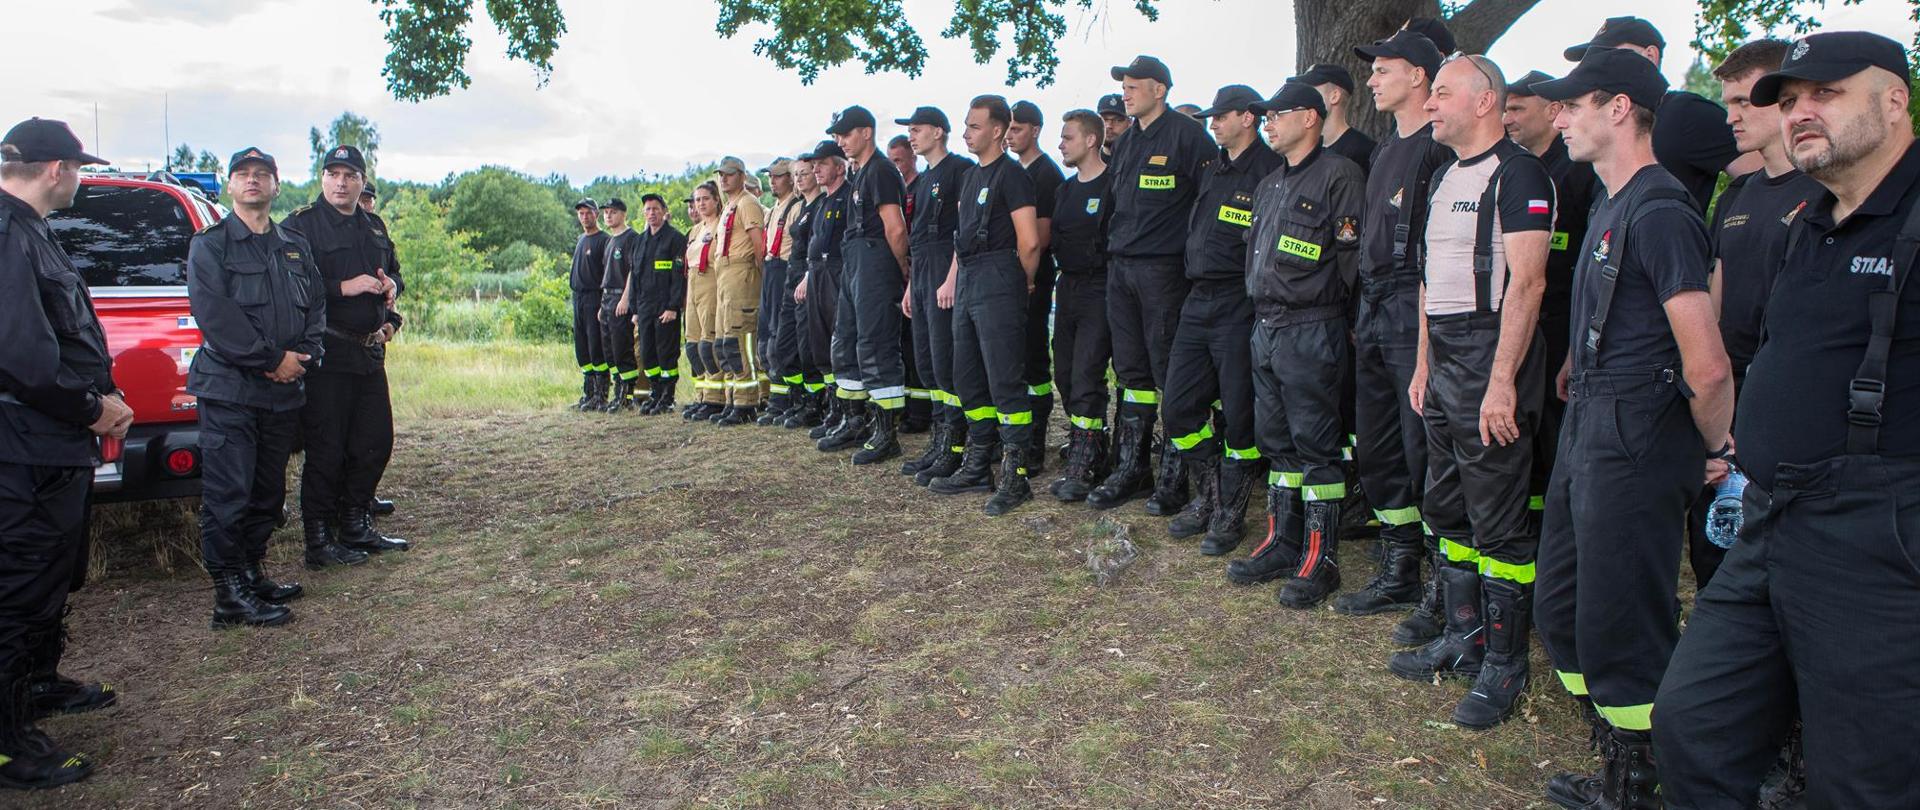 Na zdjęciu widać wszystkich uczestników kursu oraz strażaków z KP PSP w Pile prowadzących zajęcia.